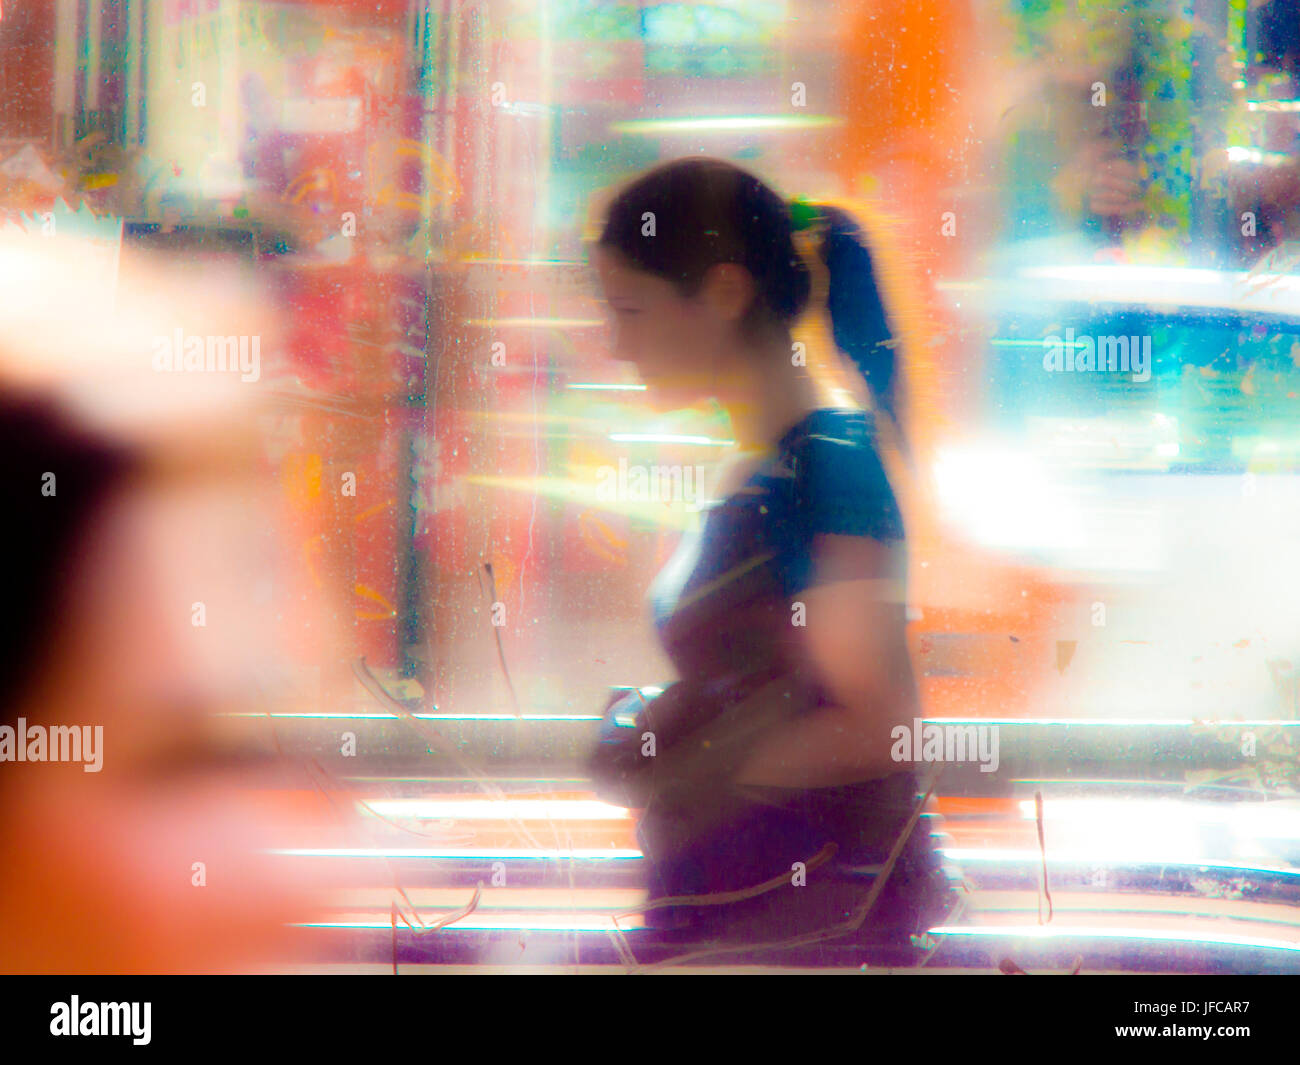 Sfocata giovane donna nelle strade della città in una giornata di sole con colori vibranti, luce ardente e riflessi di vetro Foto Stock